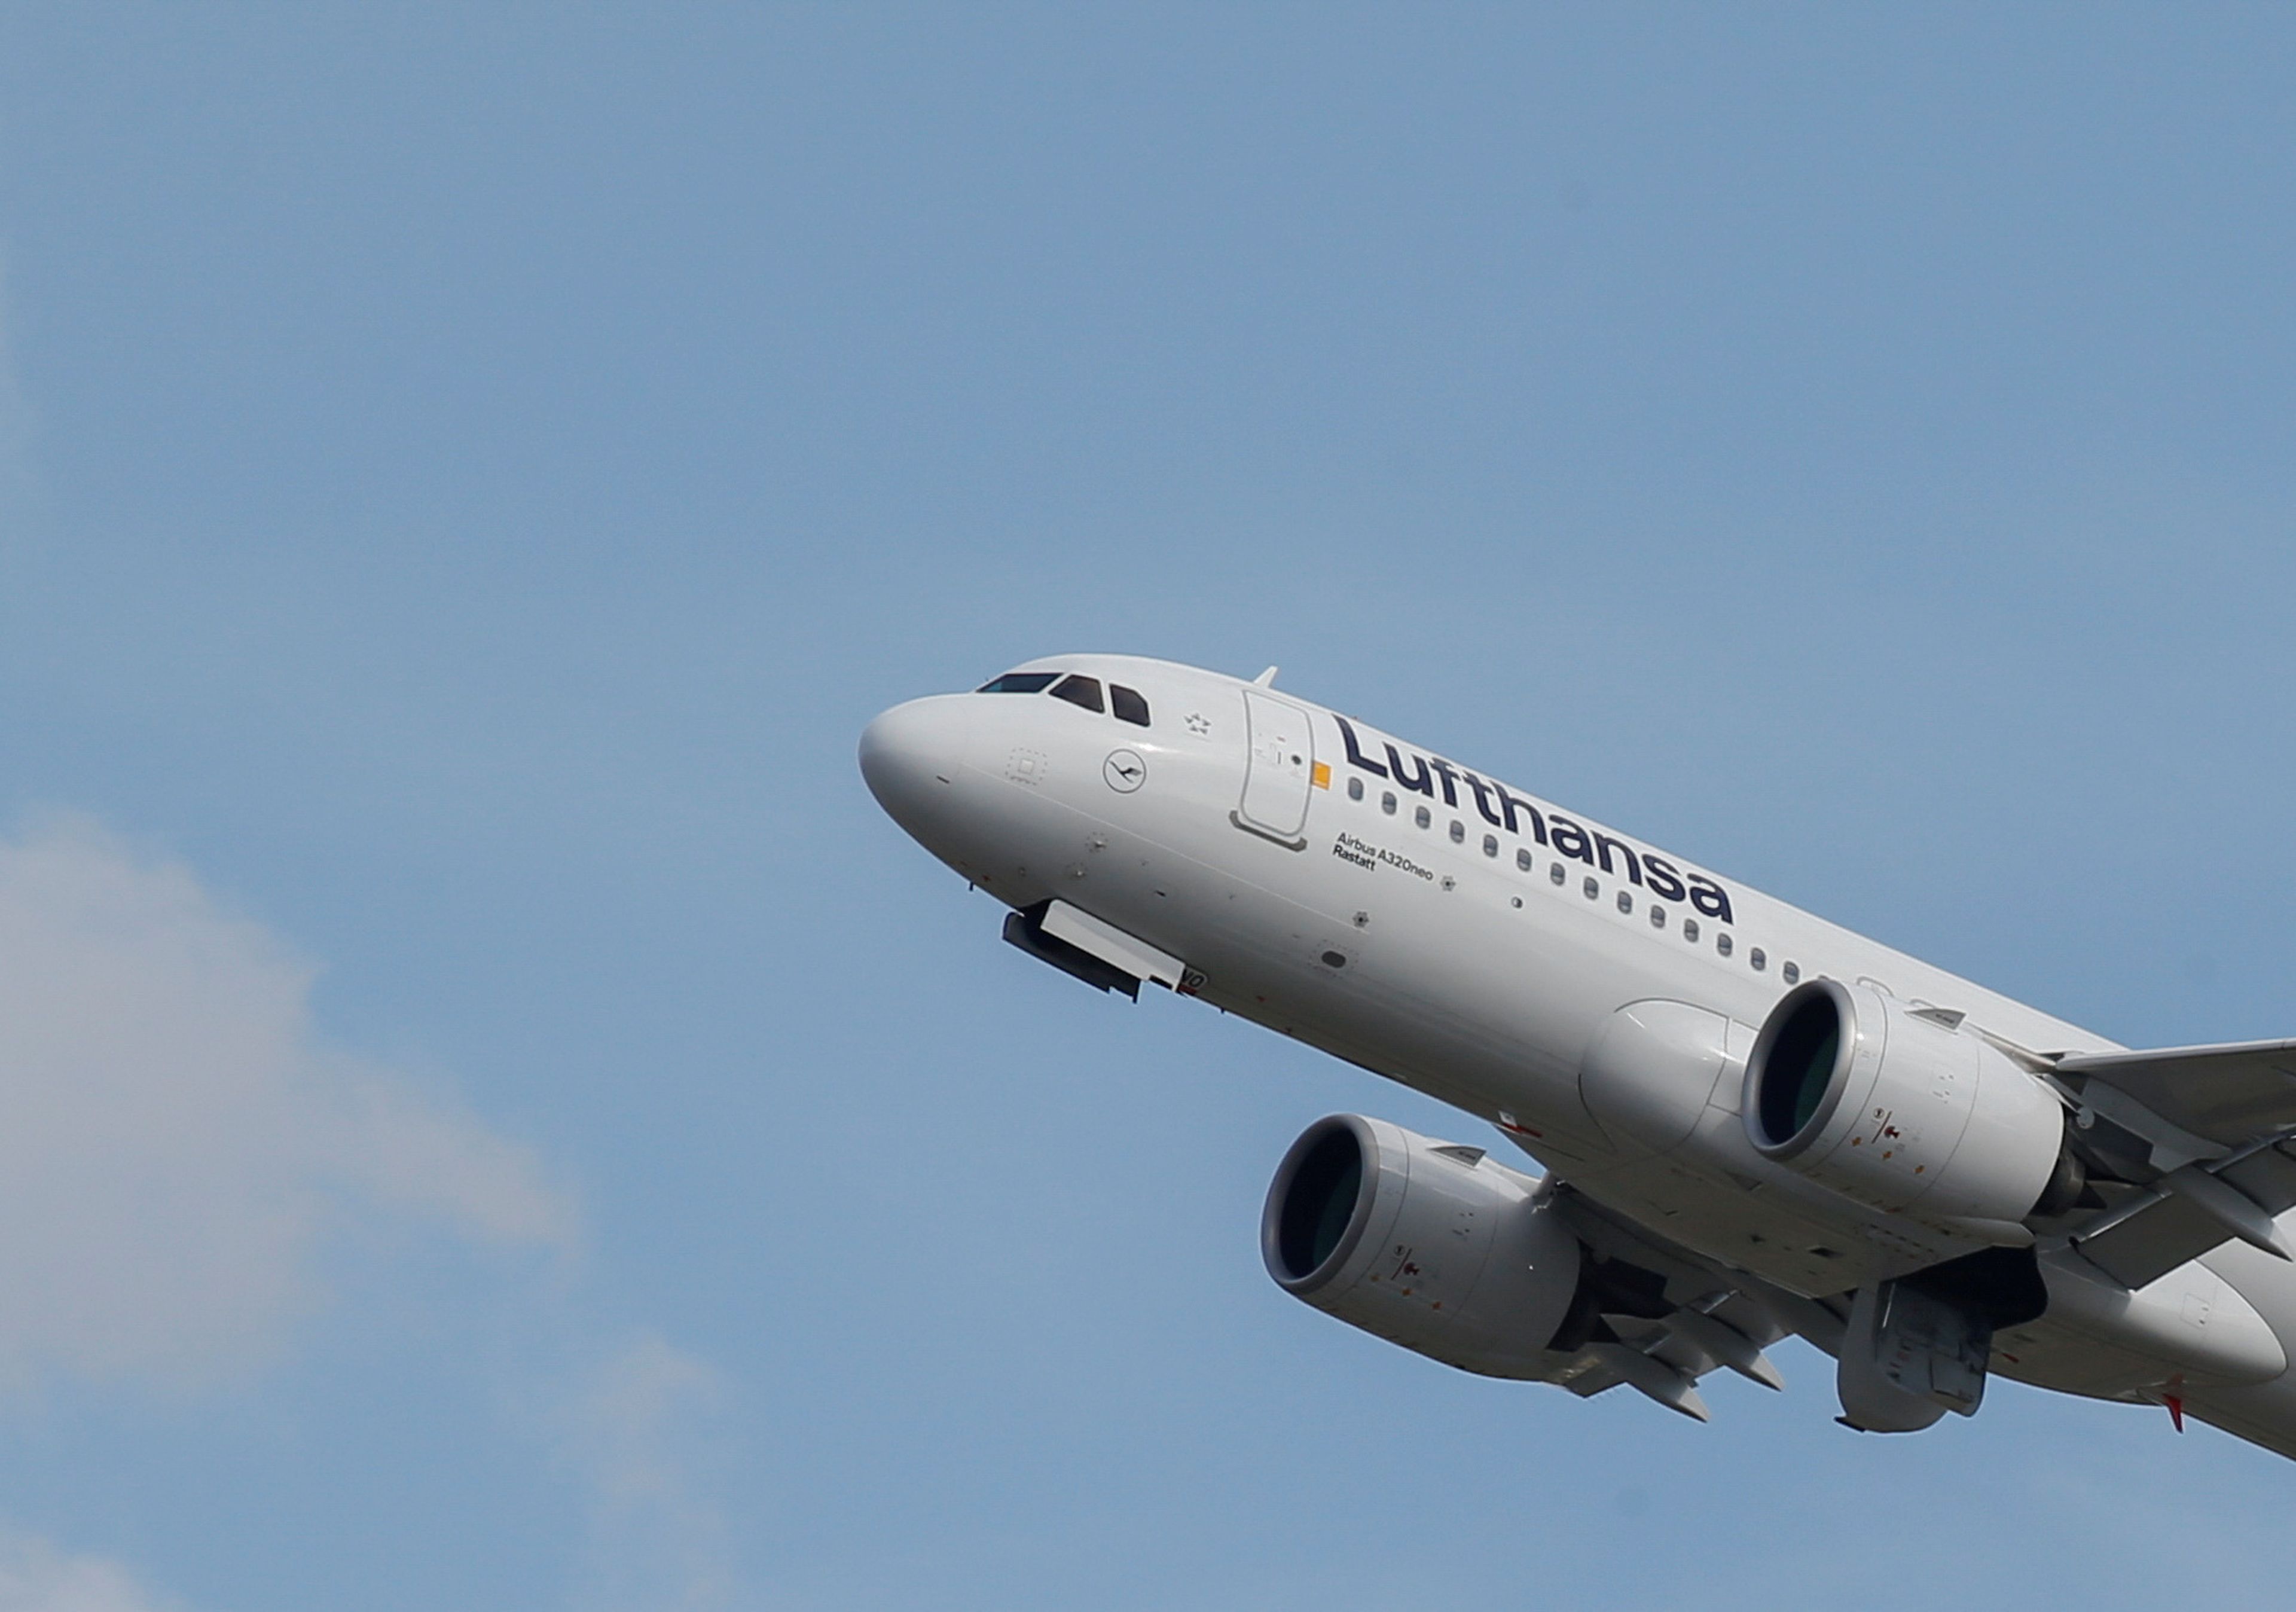 Un avión de Lufthansa despega de un aeropuerto